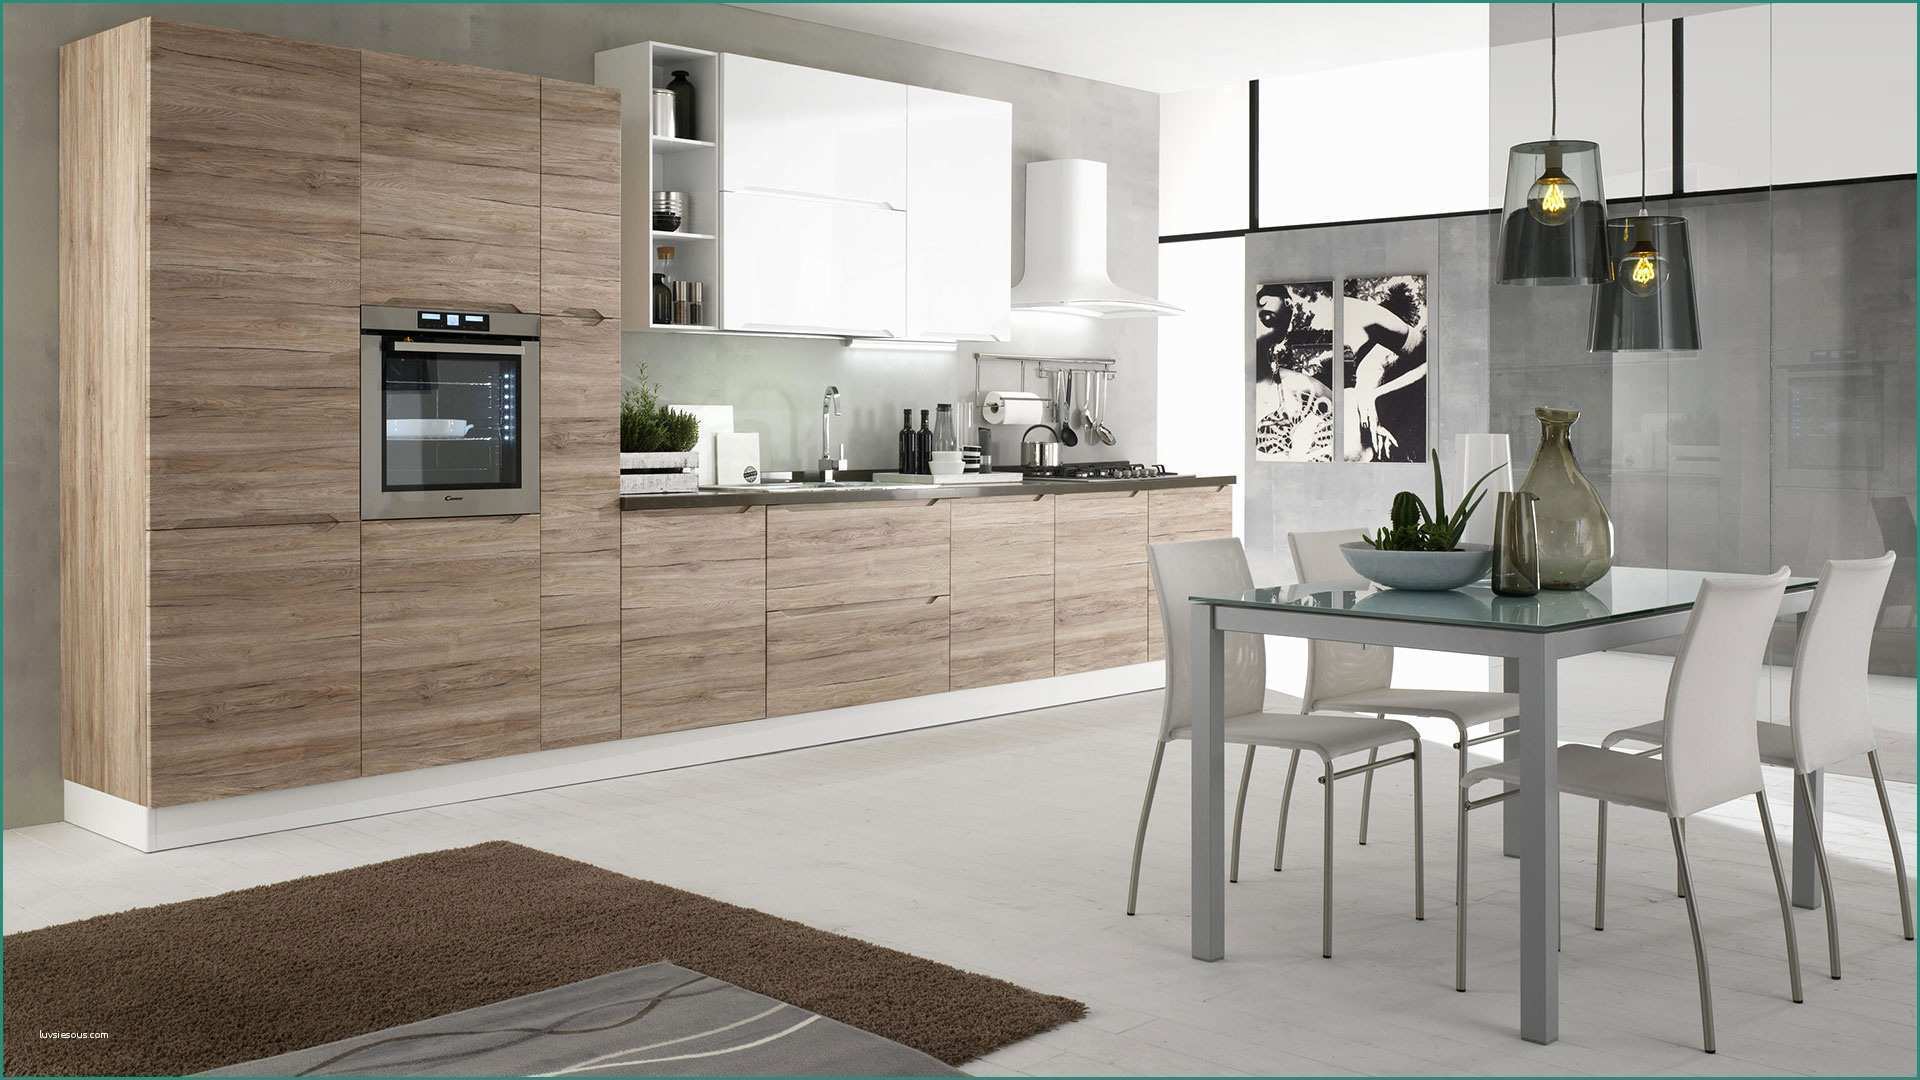 Colori Cucine Moderne E Immagini Di Cucine Moderne Excellent soggiorno Open Space soggiorno